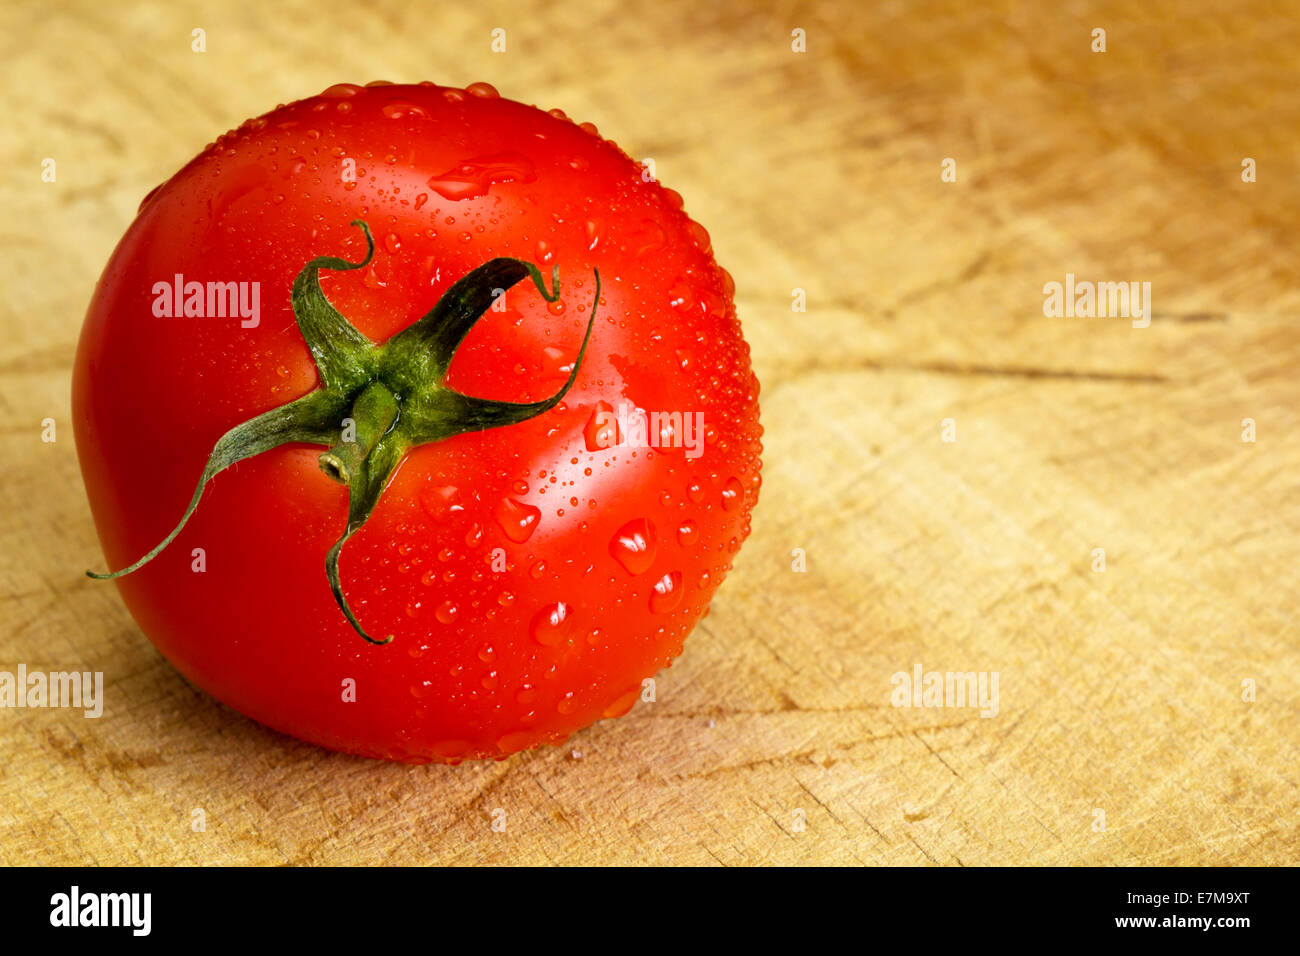 Une tomate rouge mûre est humide avec des gouttelettes d'eau Banque D'Images